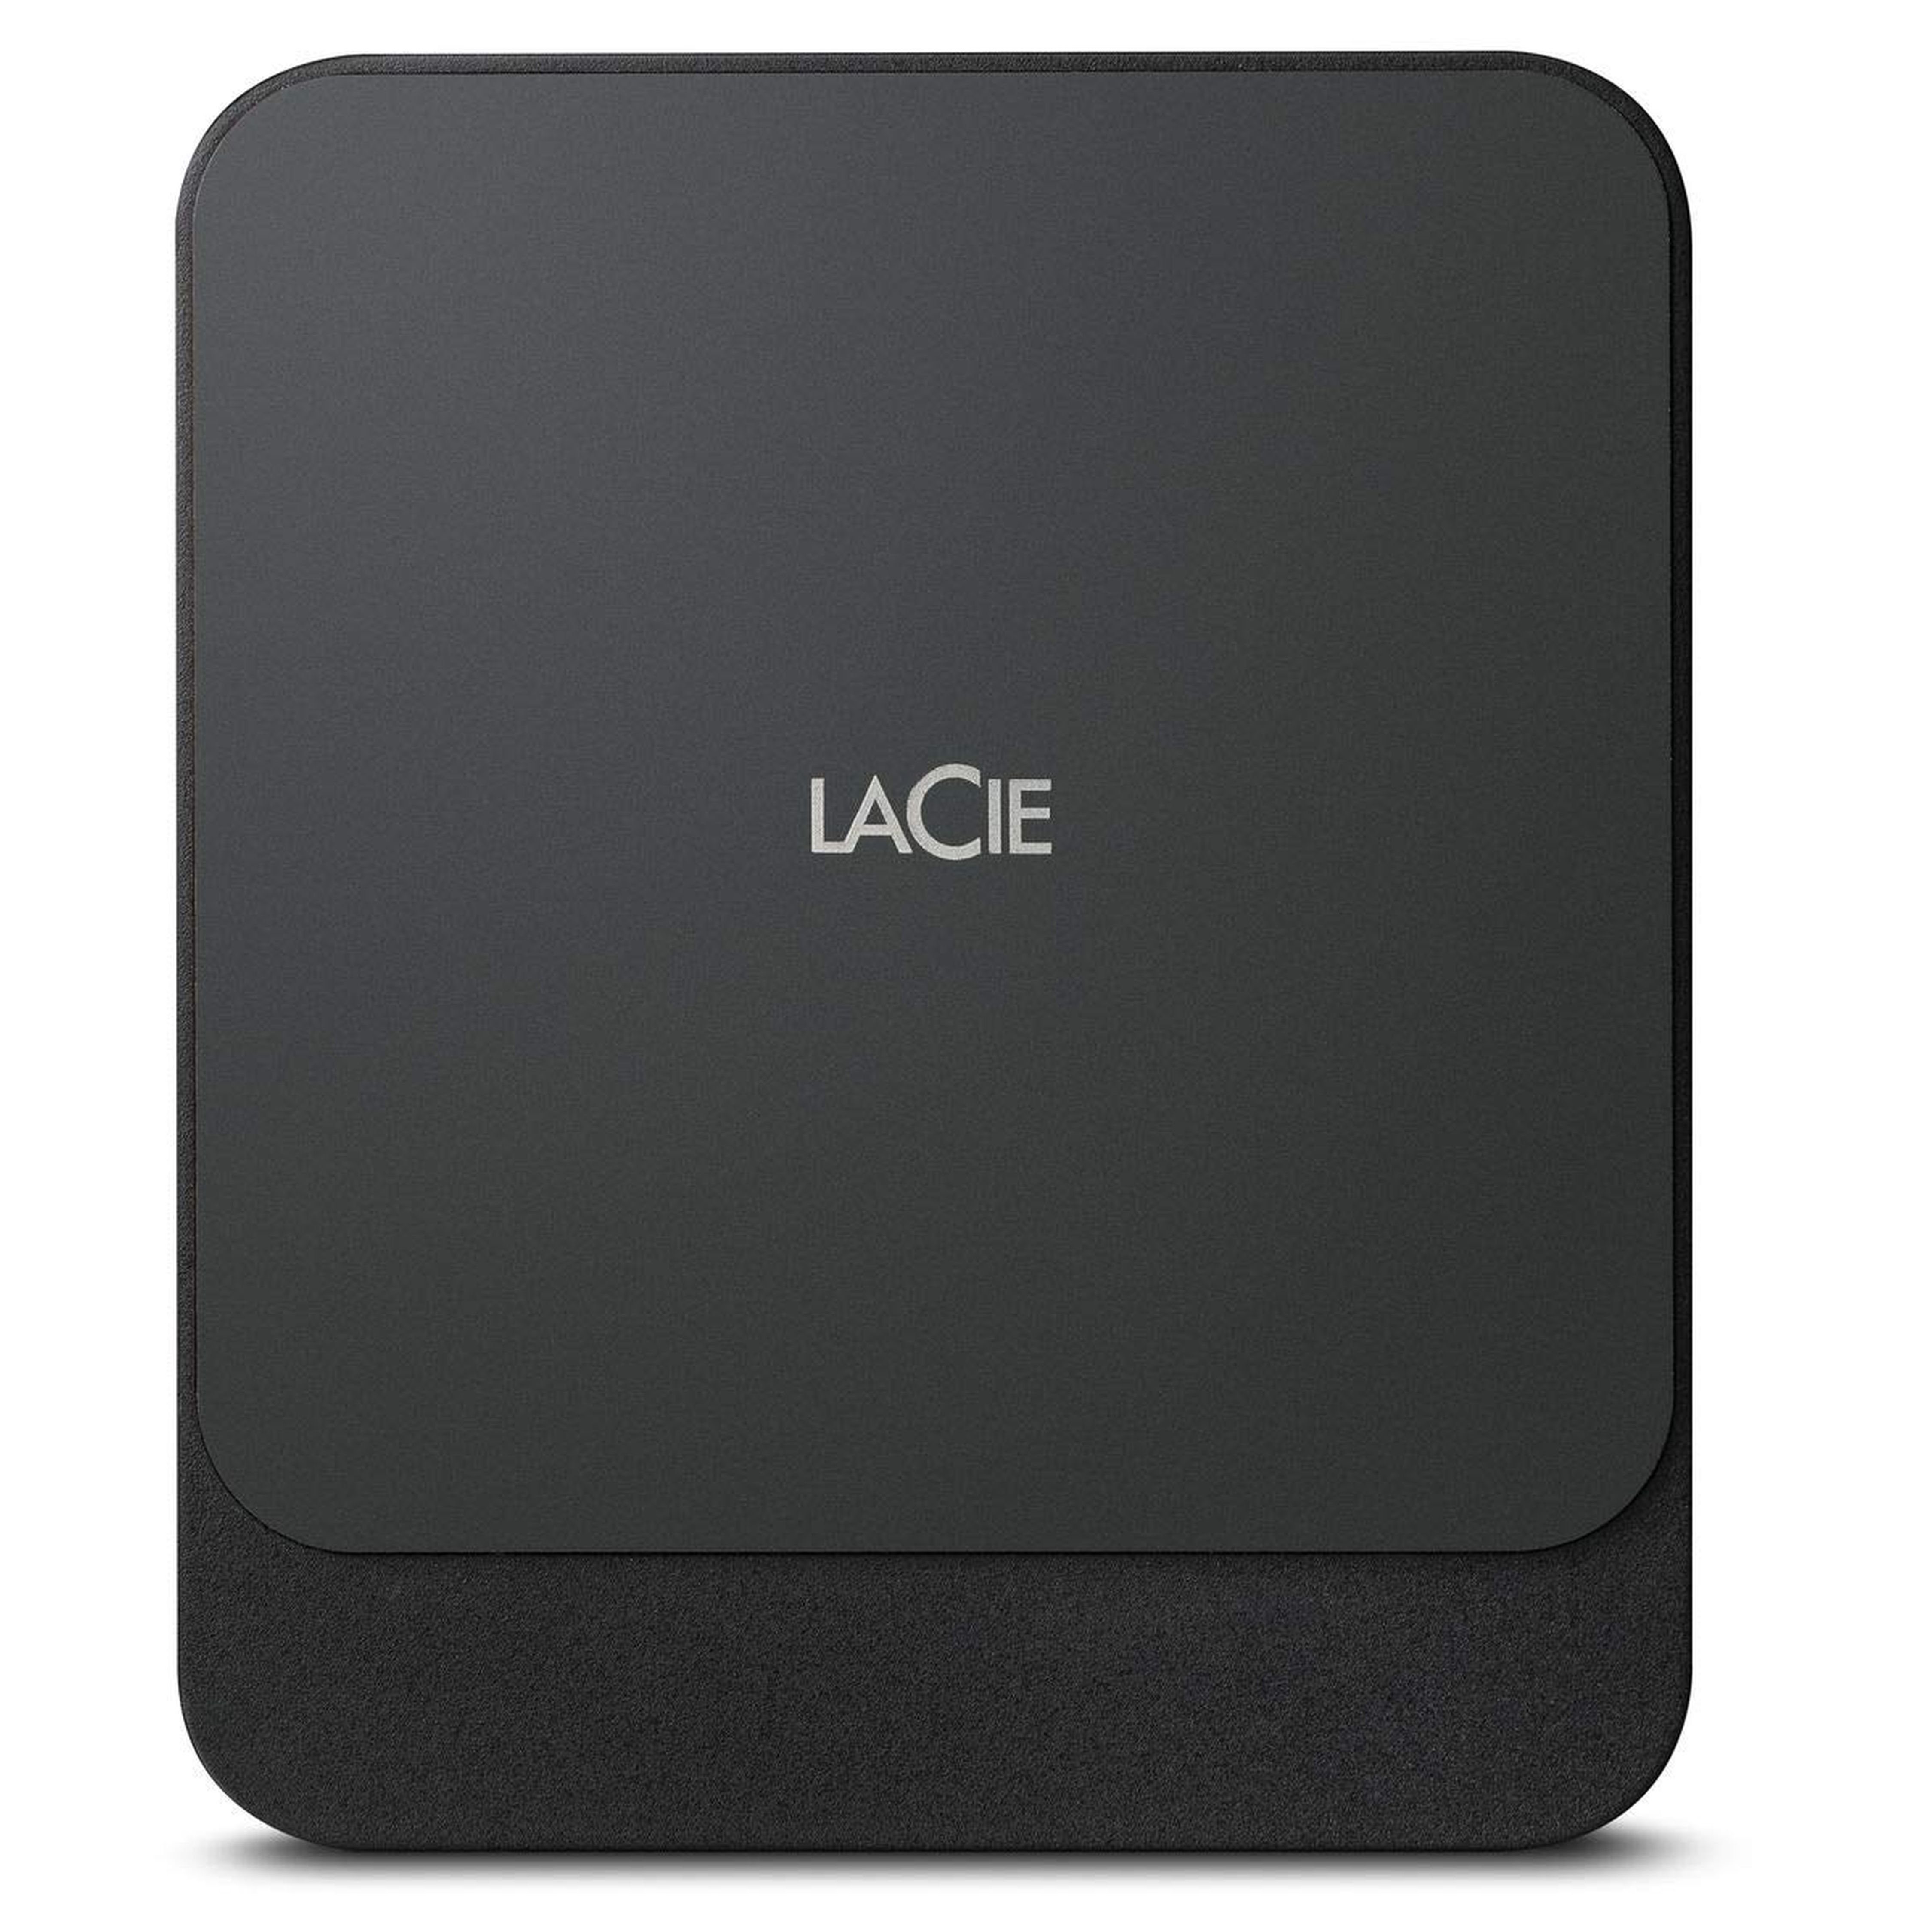 LaCie »Portable SSD« externe SSD (500 GB) 2,5" 540 MB/S  Lesegeschwindigkeit, 540 MB/S Schreibgeschwindigkeit, 2,5) online kaufen |  OTTO